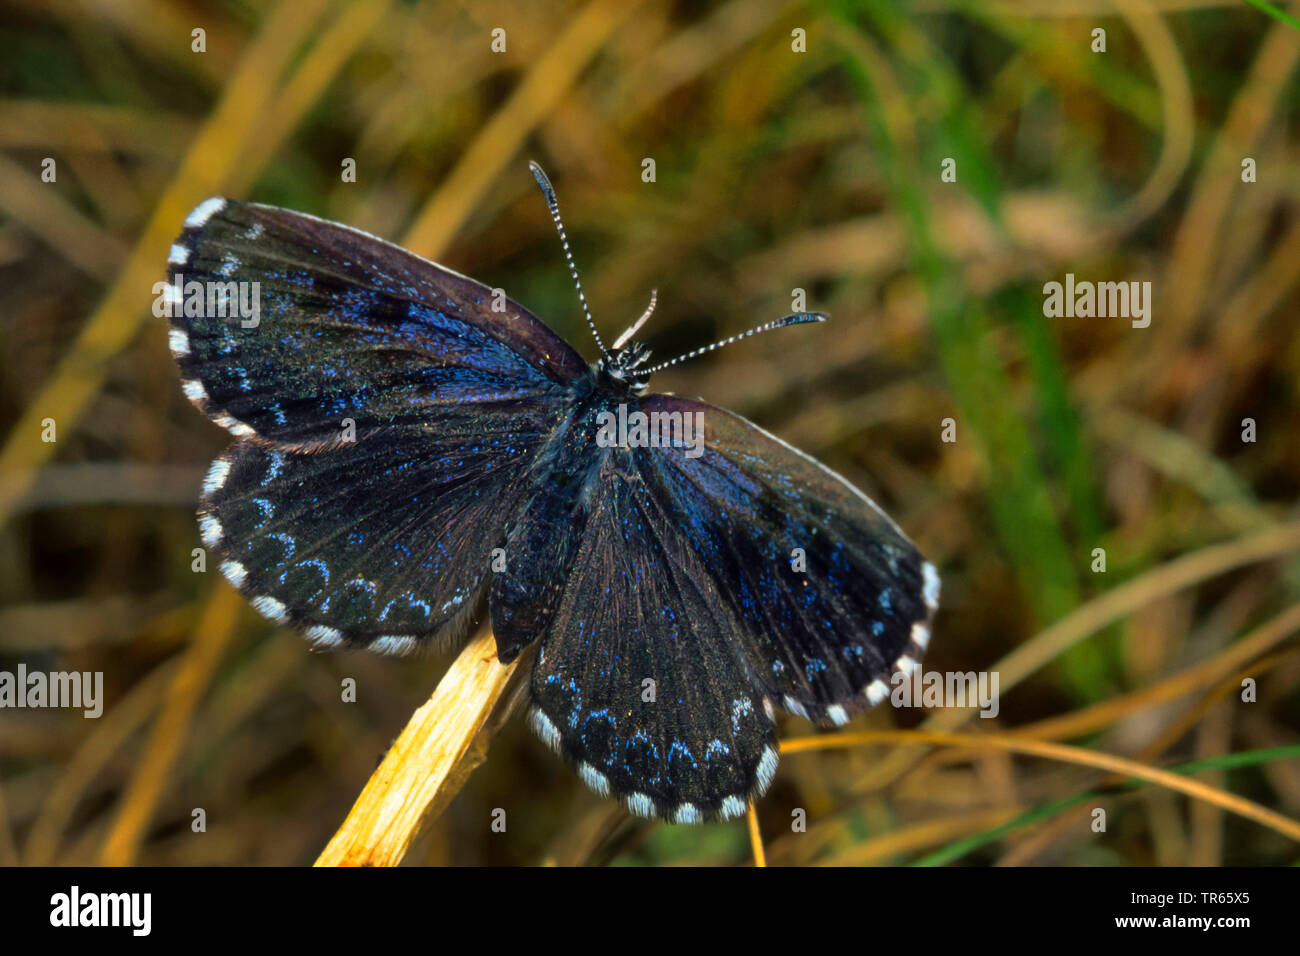 A cuadros azules (Scolitantides orion, Scolitantides ultraornata), imago con alas abiertas, vista desde arriba, Alemania Foto de stock